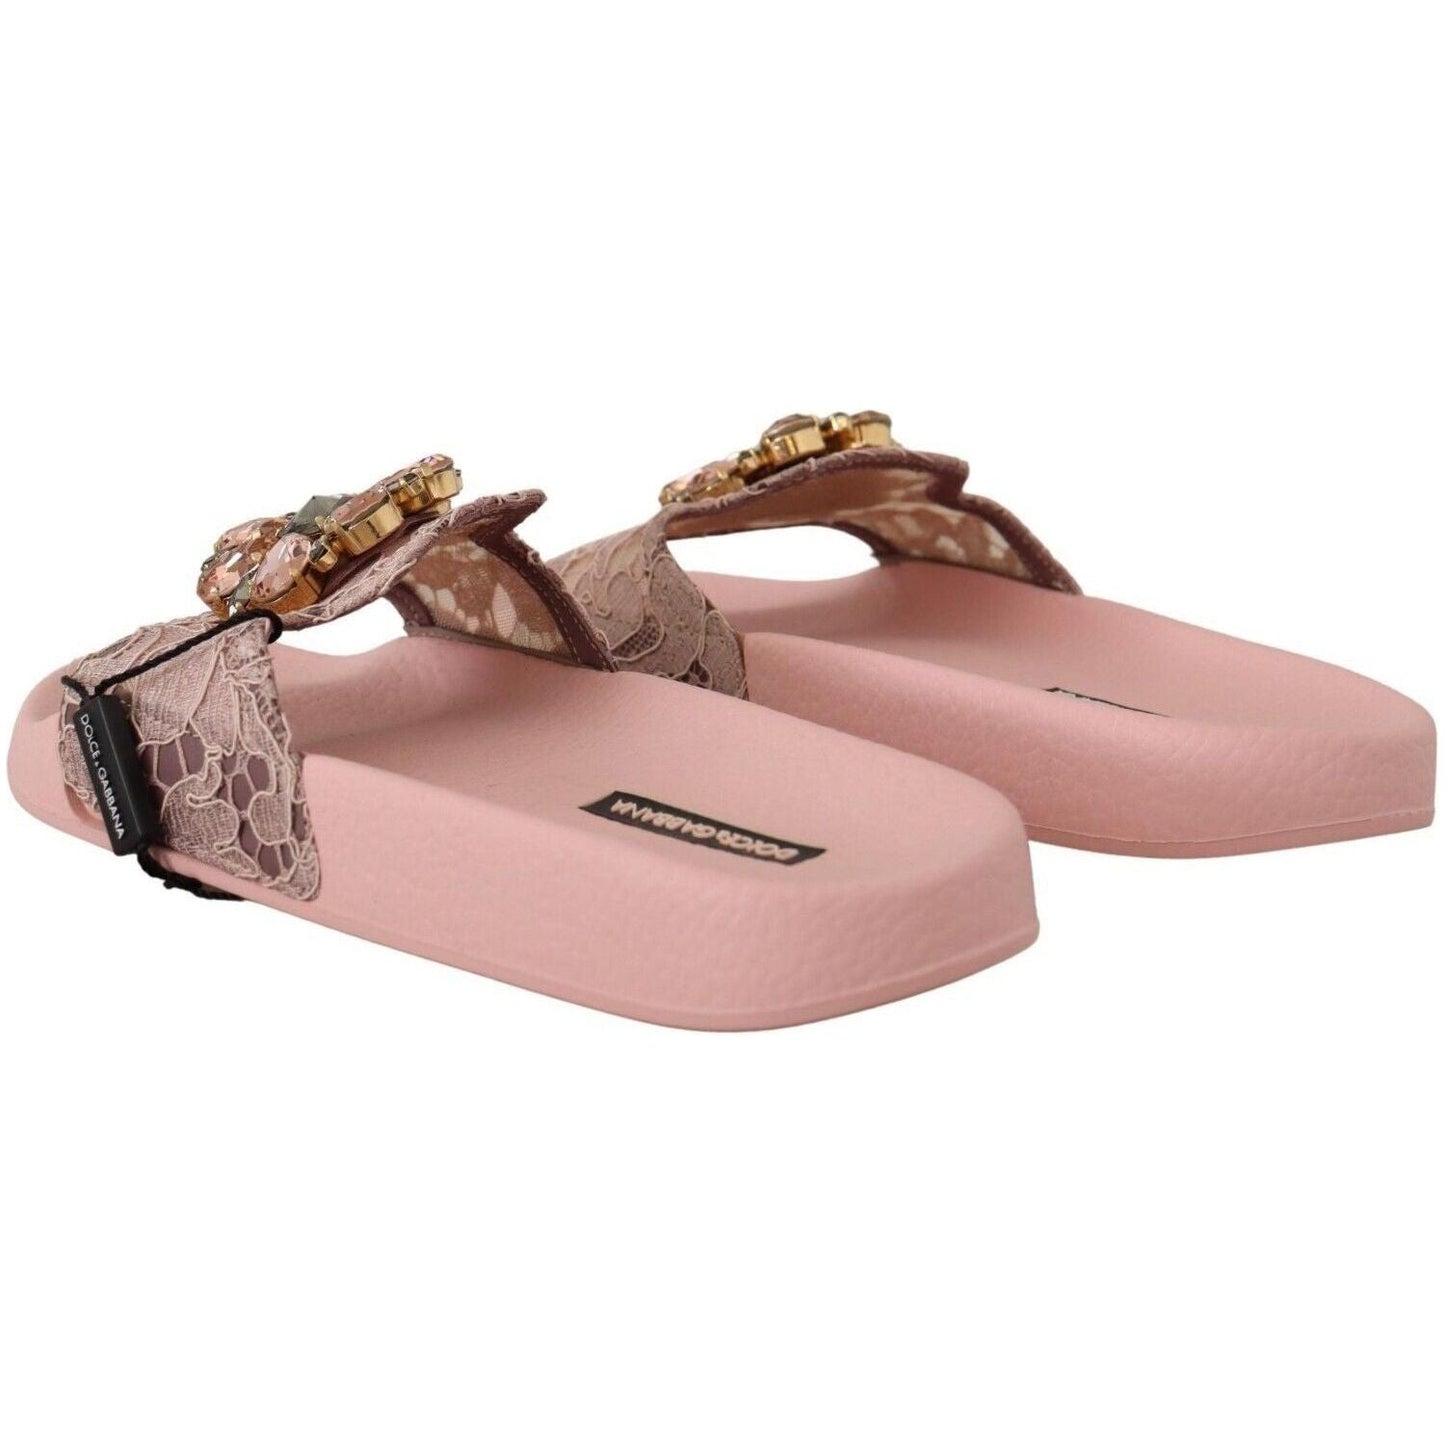 Dolce & Gabbana Floral Lace Crystal Embellished Slide Flats pink-lace-crystal-sandals-slides-beach-shoes